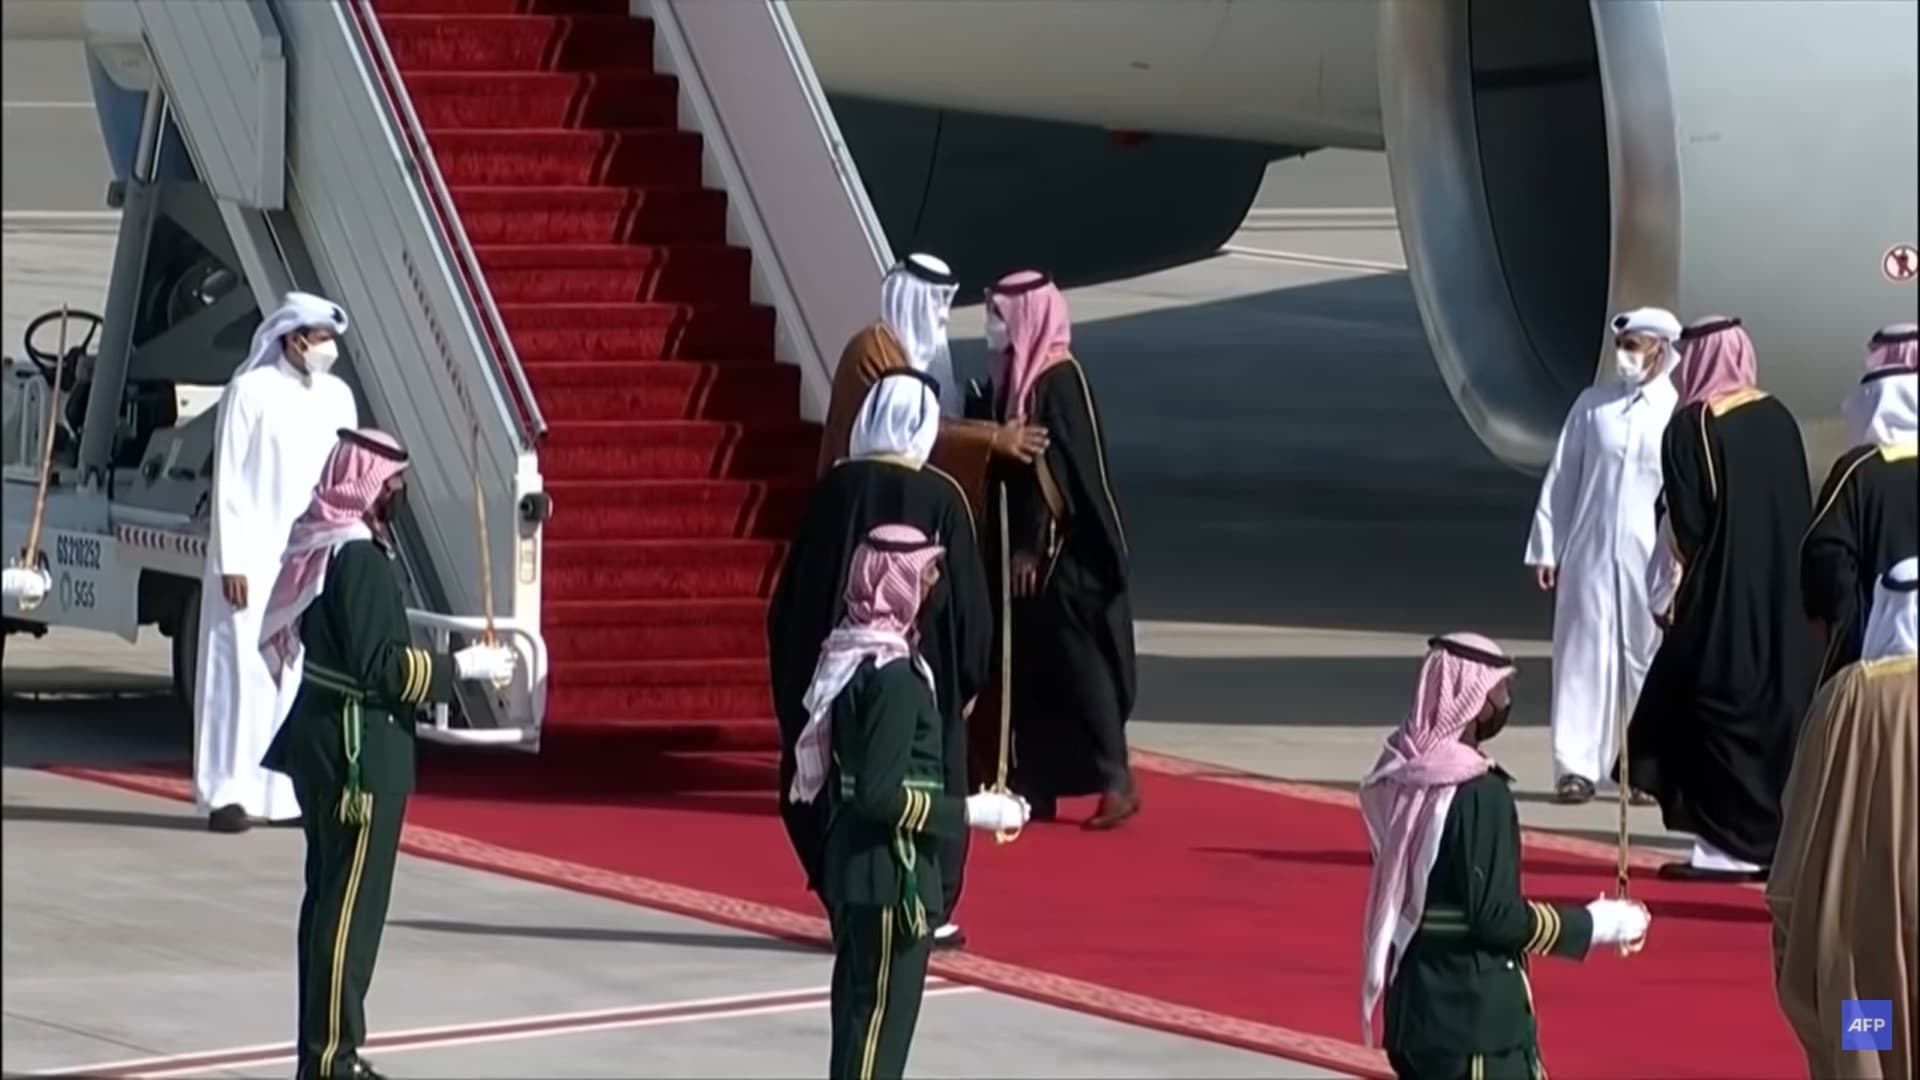 Катар и саудовская аравия